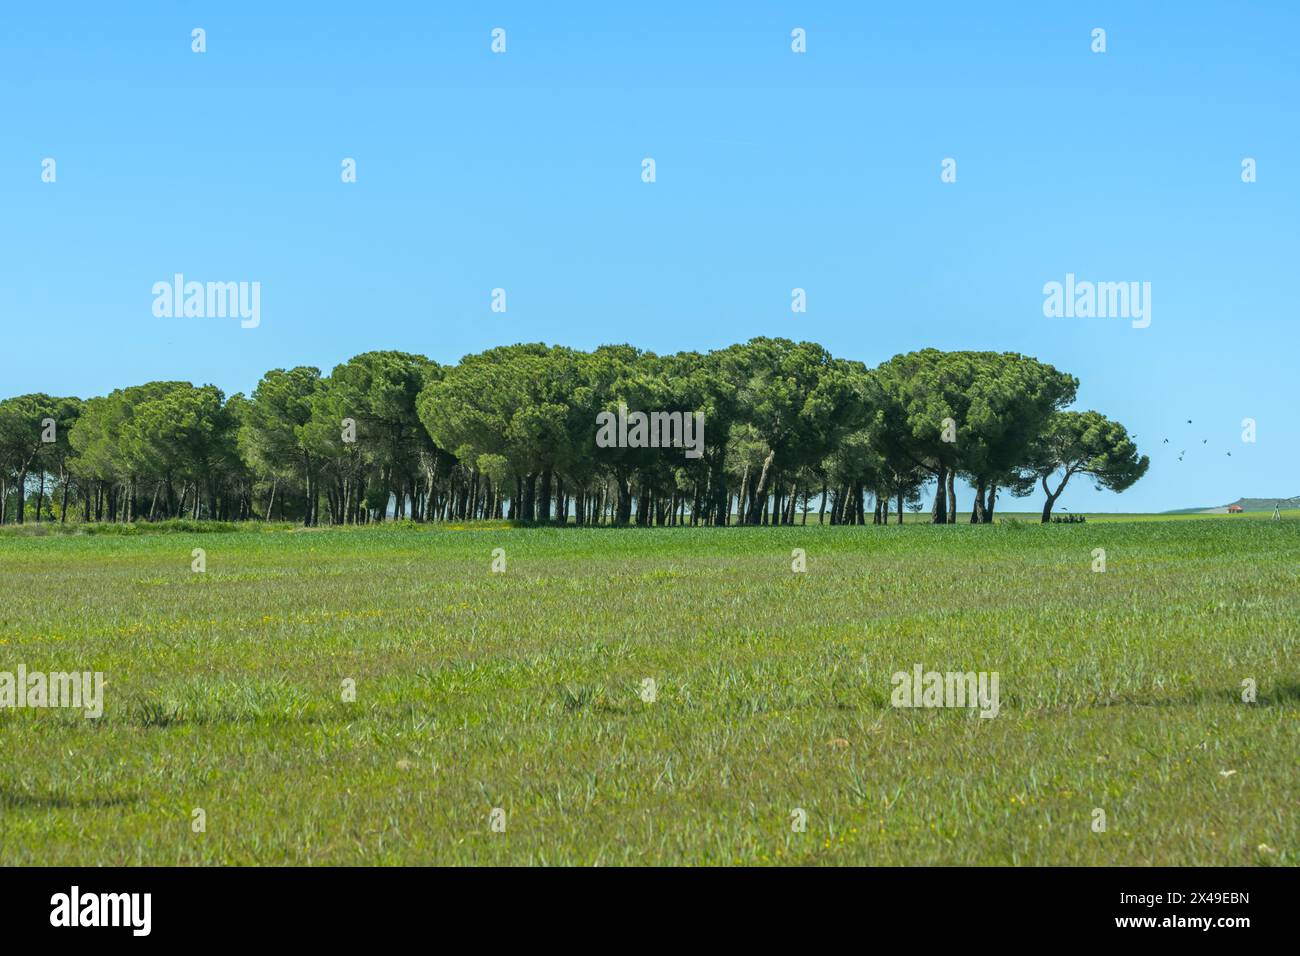 Einige schöne Felder mit grünem Gras in einer Landschaft mit einem kleinen Wald von sanften Kiefern Stockfoto